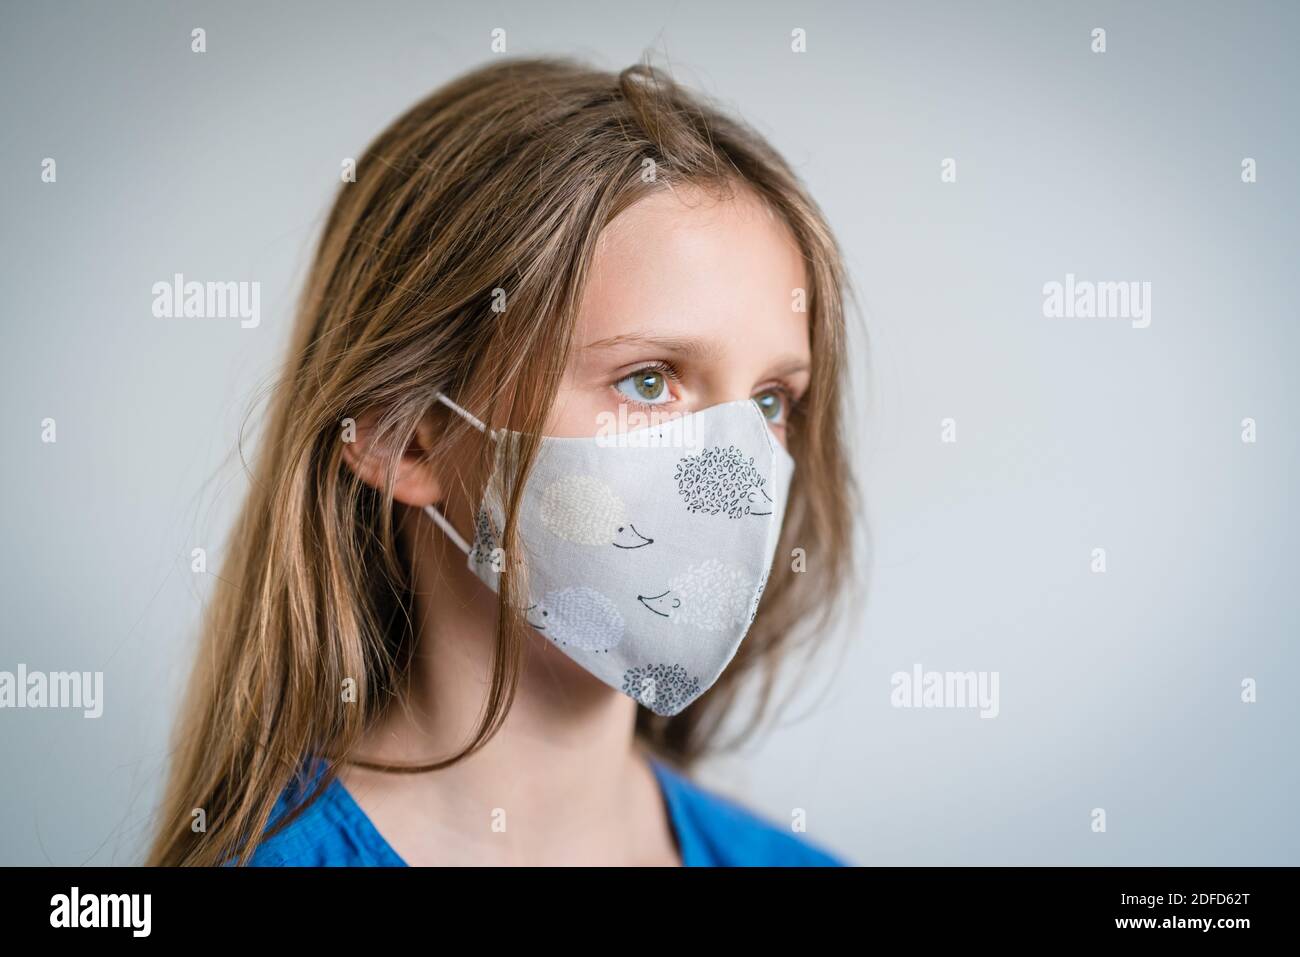 Enfant de 11 ans portant un masque de protection pendant la pandémie de Covid 19. Banque D'Images